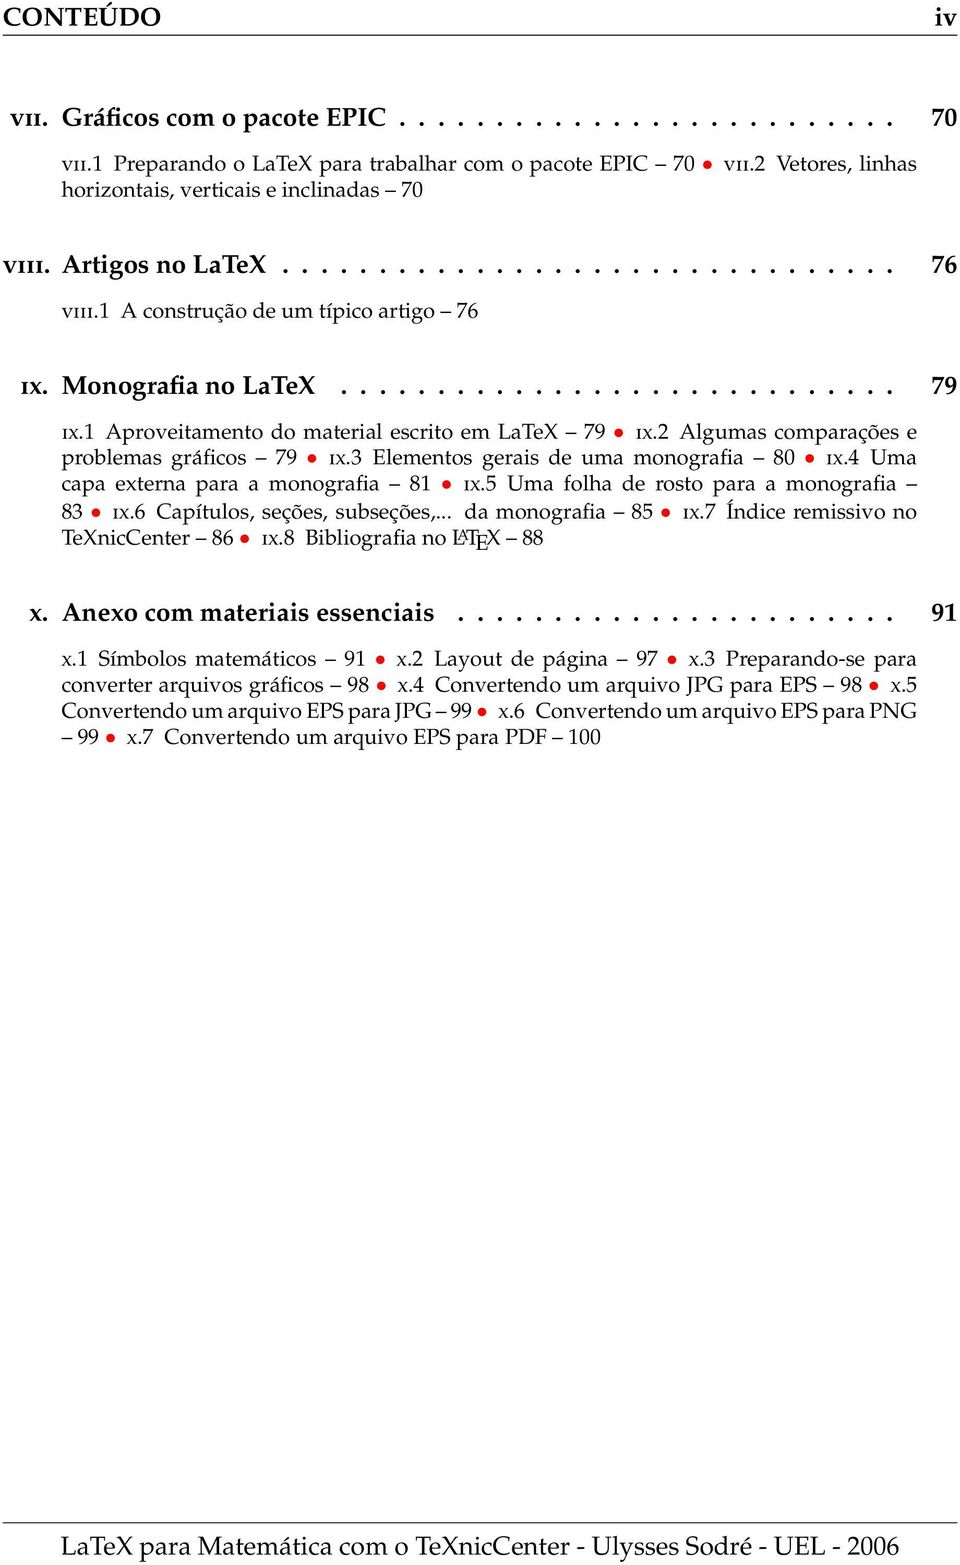 1 Aproveitamento do material escrito em LaTeX 79 IX.2 Algumas comparações e problemas gráficos 79 IX.3 Elementos gerais de uma monografia 80 IX.4 Uma capa externa para a monografia 81 IX.